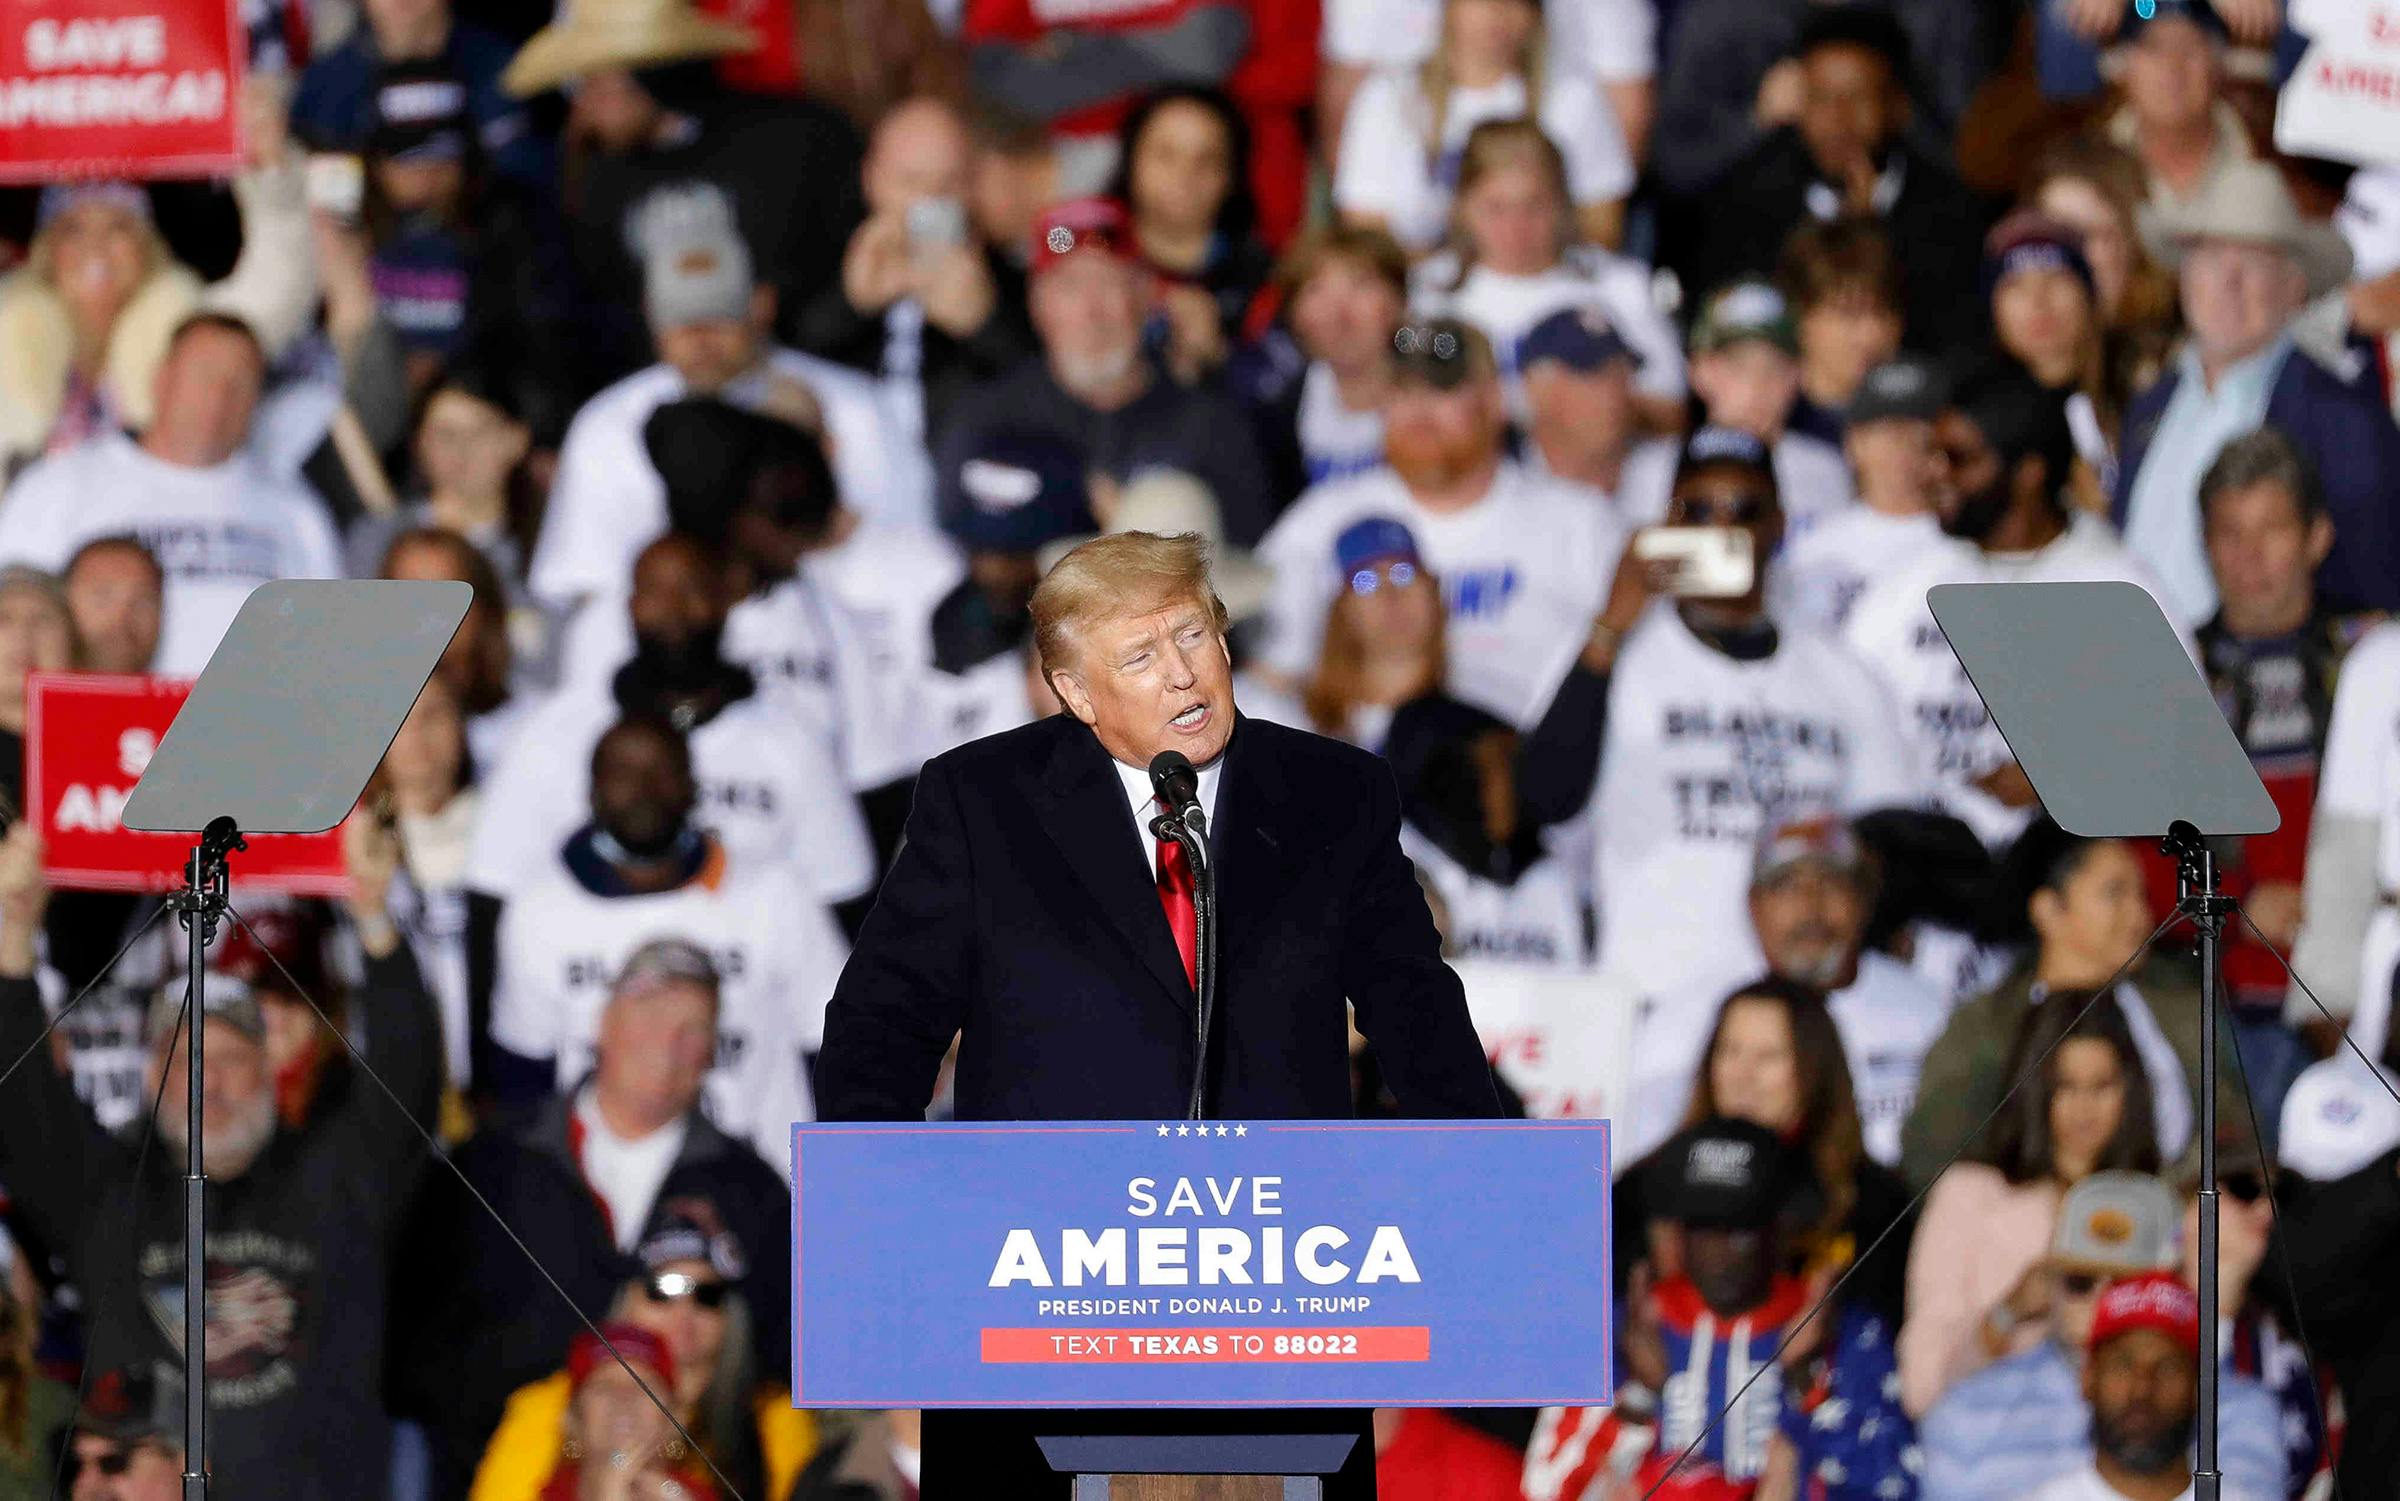 Trump, in Texas, bashes Democrats as 'crazy,' unpatriotic